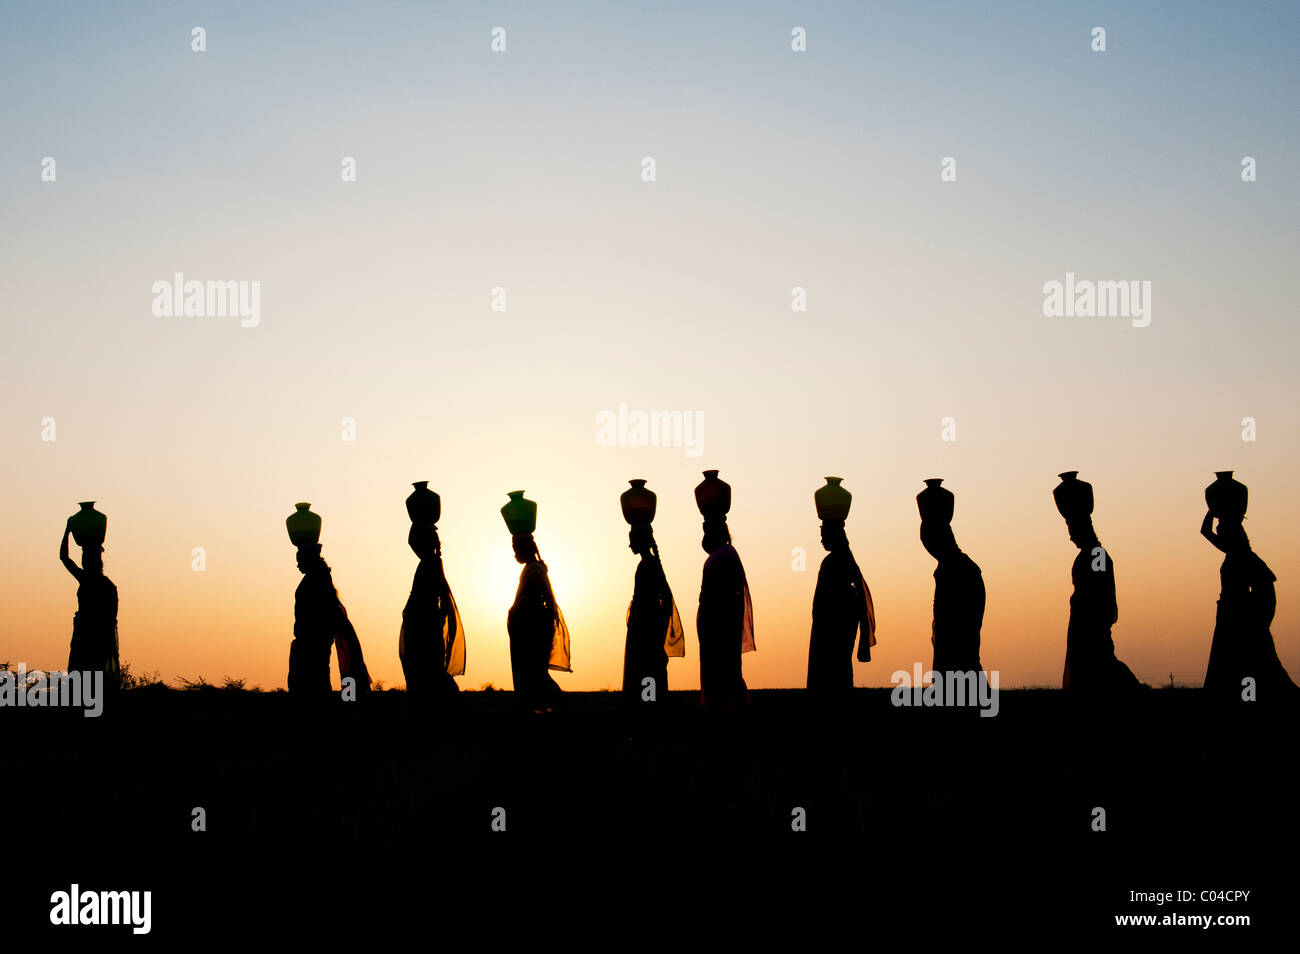 Groupe de femmes indiennes balade au coucher du soleil à transporter de l'eau sur leurs têtes des pots dans la campagne indienne. Silhouette Banque D'Images